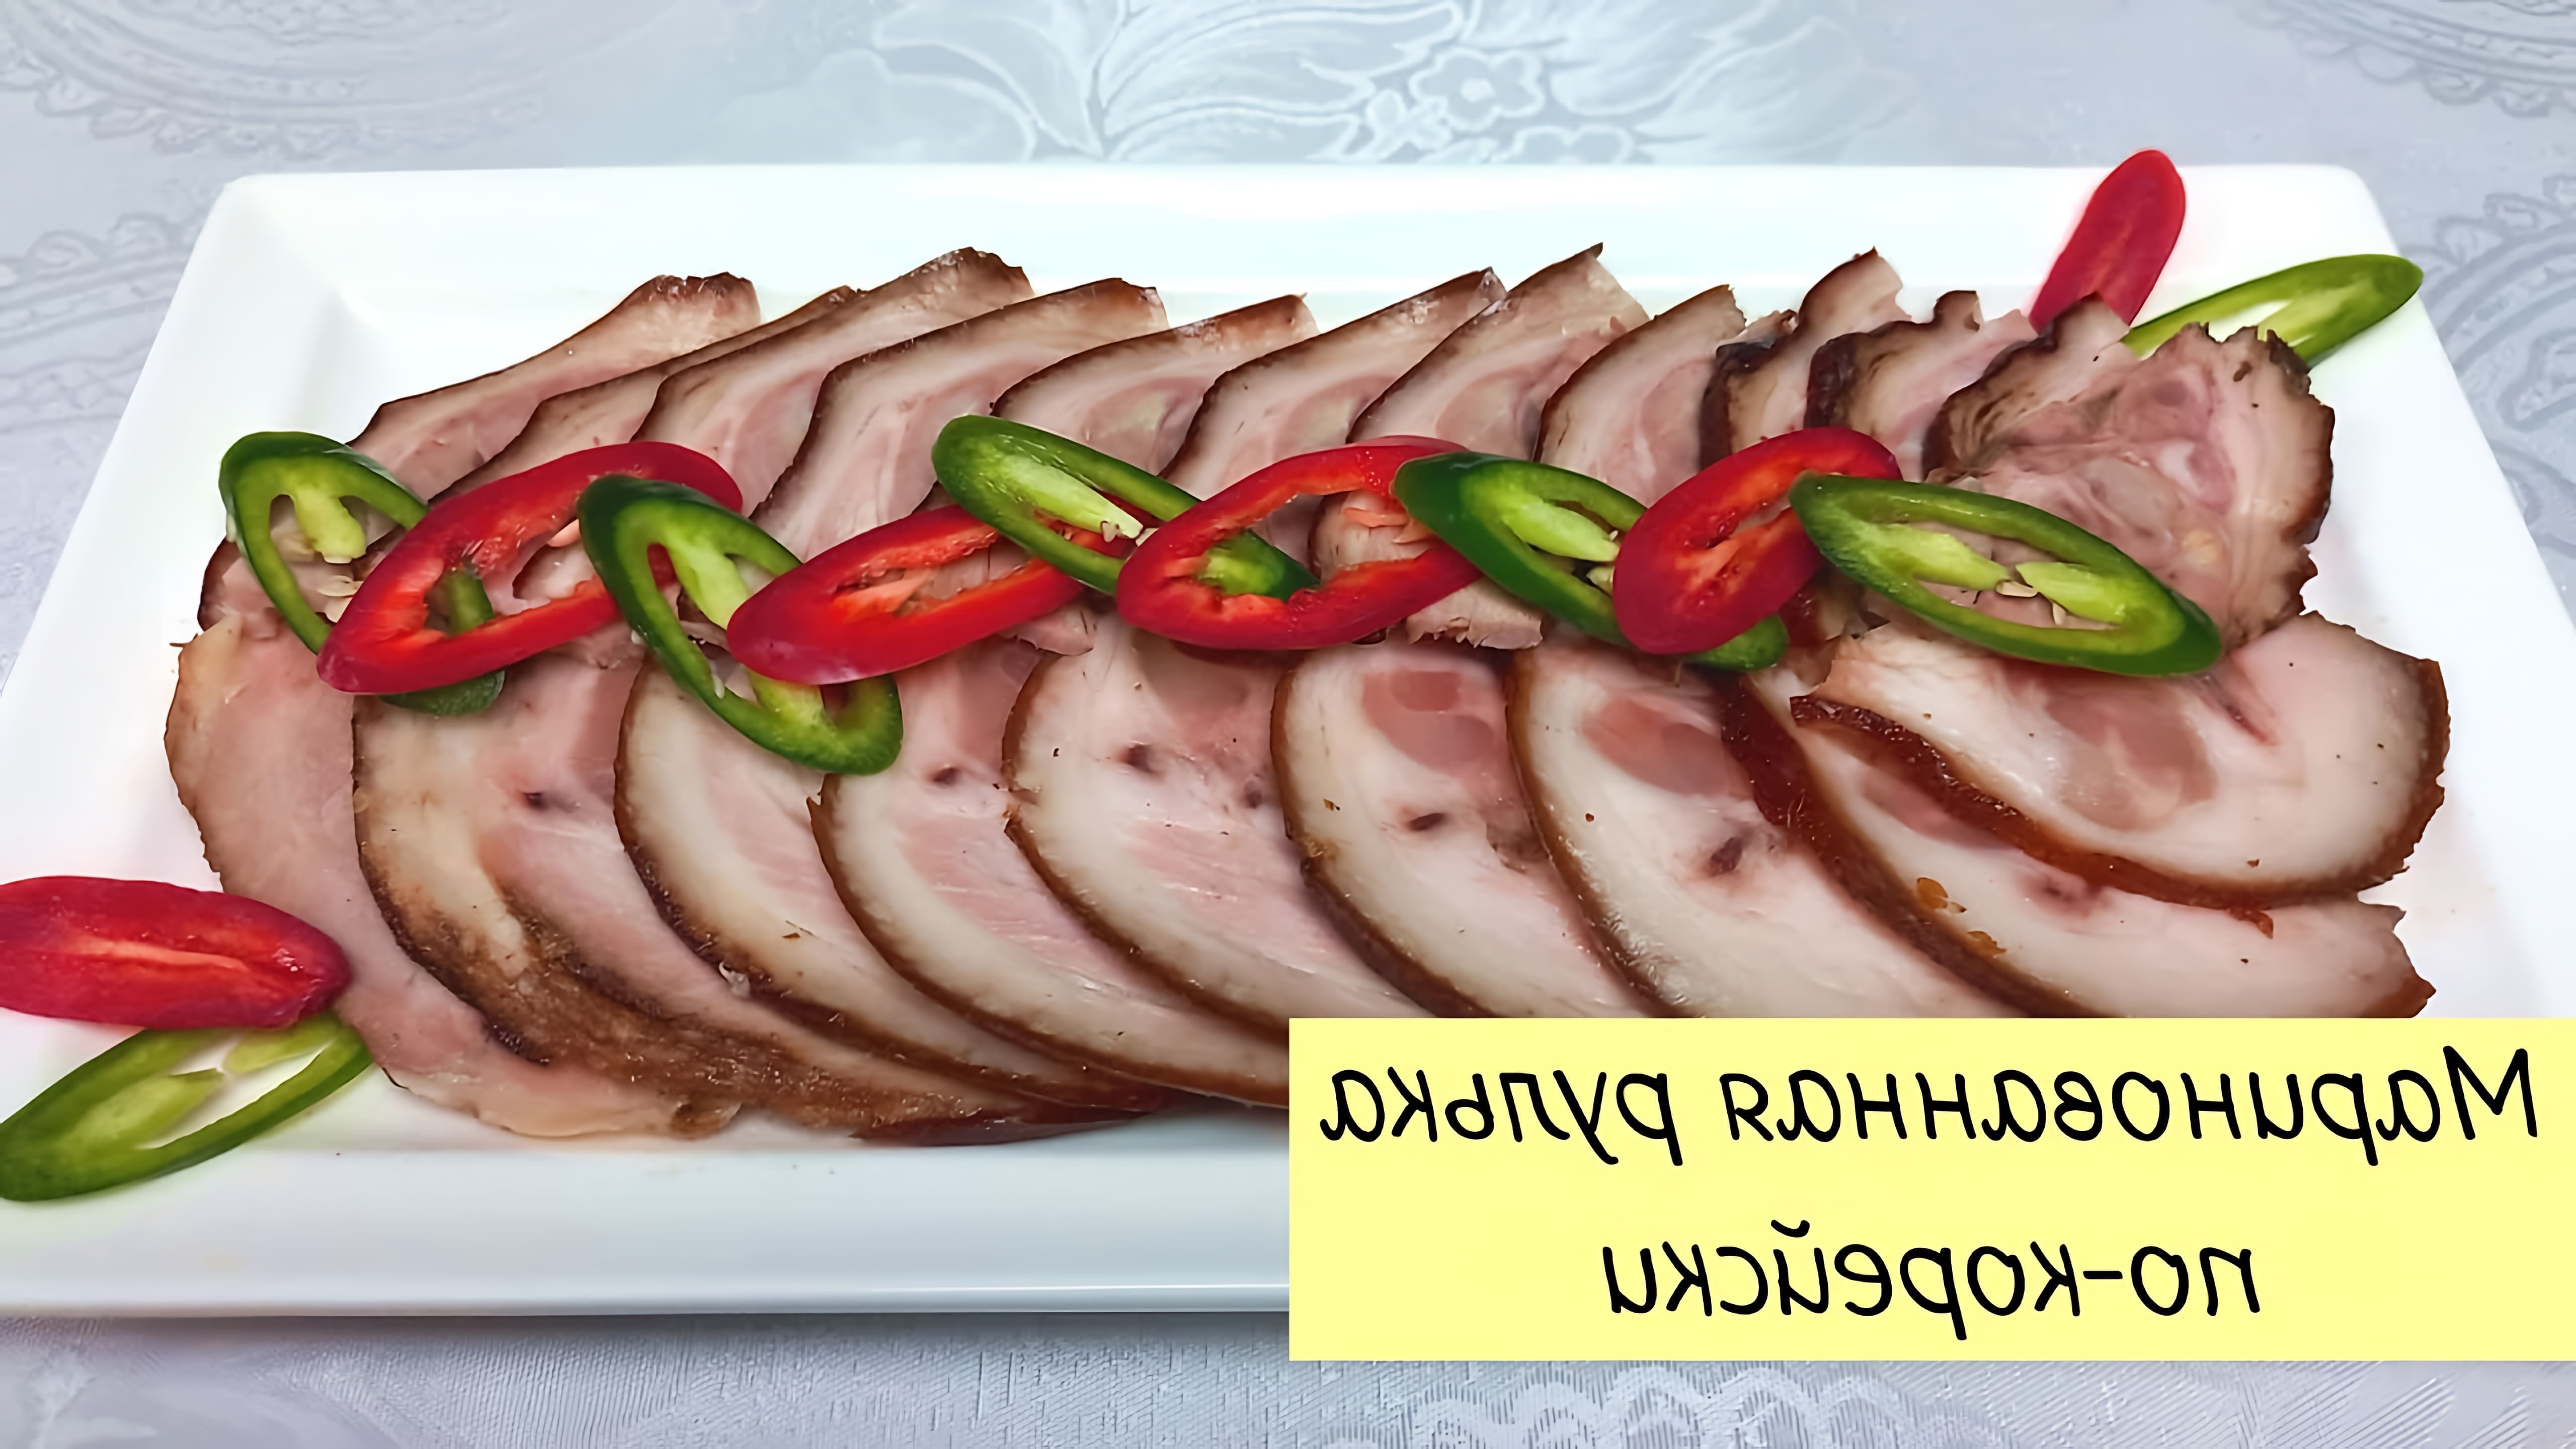 В данном видео демонстрируется процесс приготовления чокпаля - маринованной свиной рульки по корейской кухне